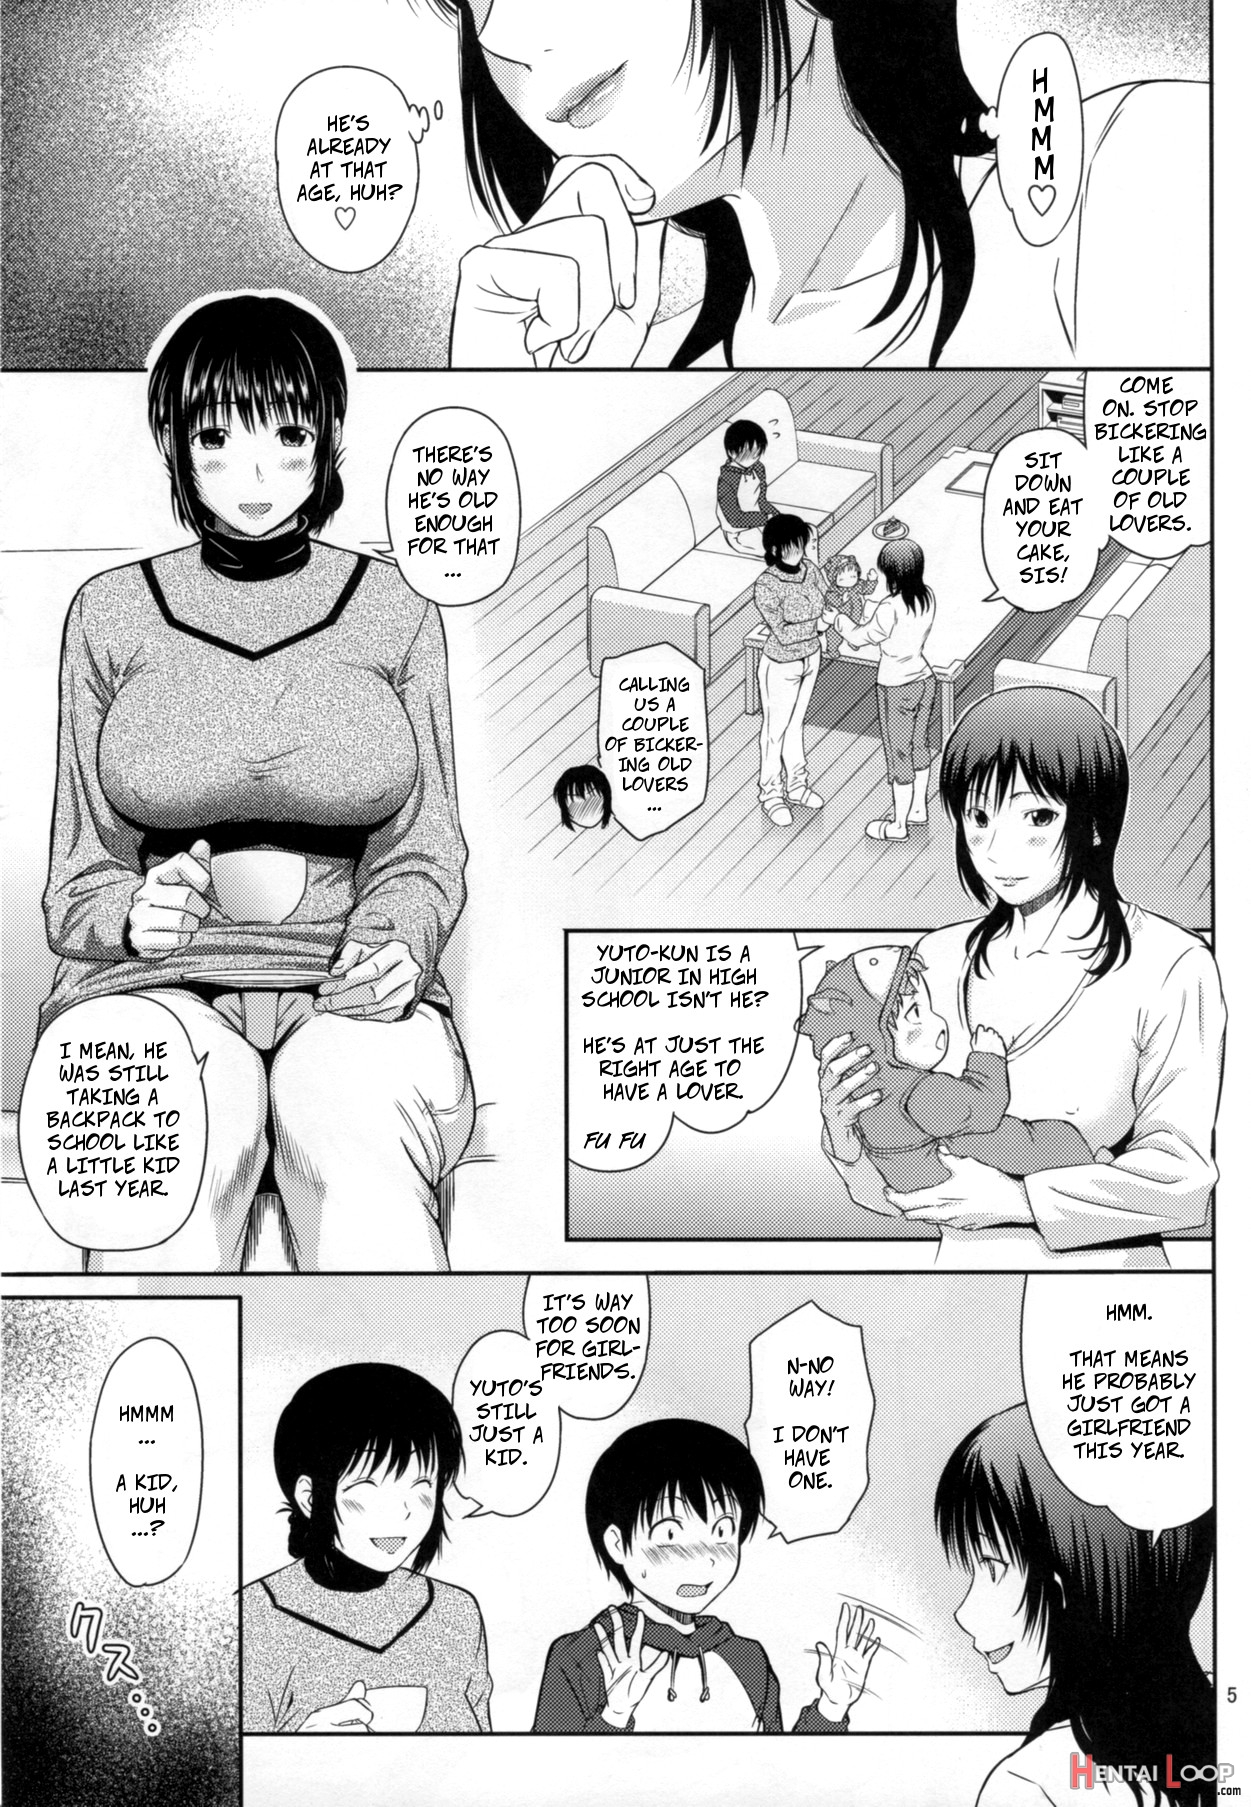 Boketsu O Horu 16 page 4